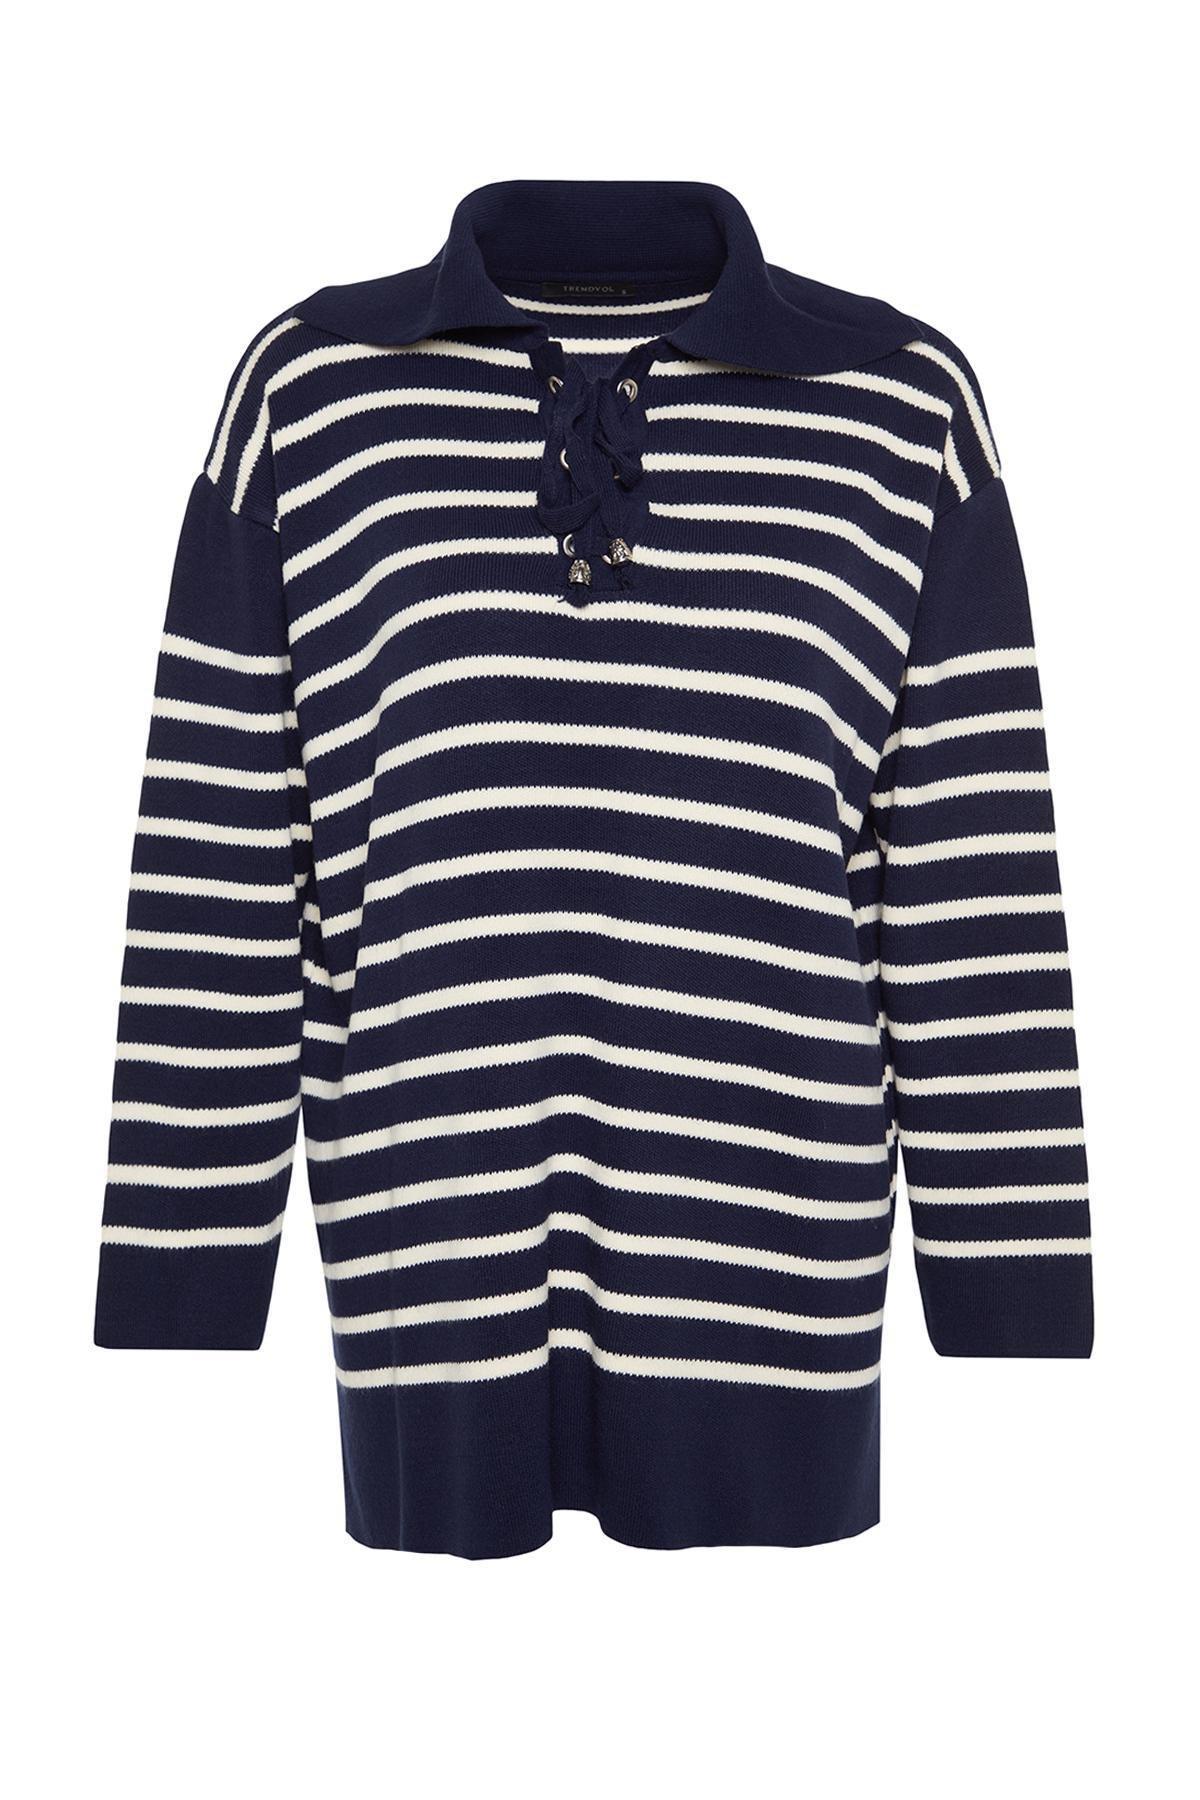 Trendyol - Navy Striped Knitwear Sweater<br>